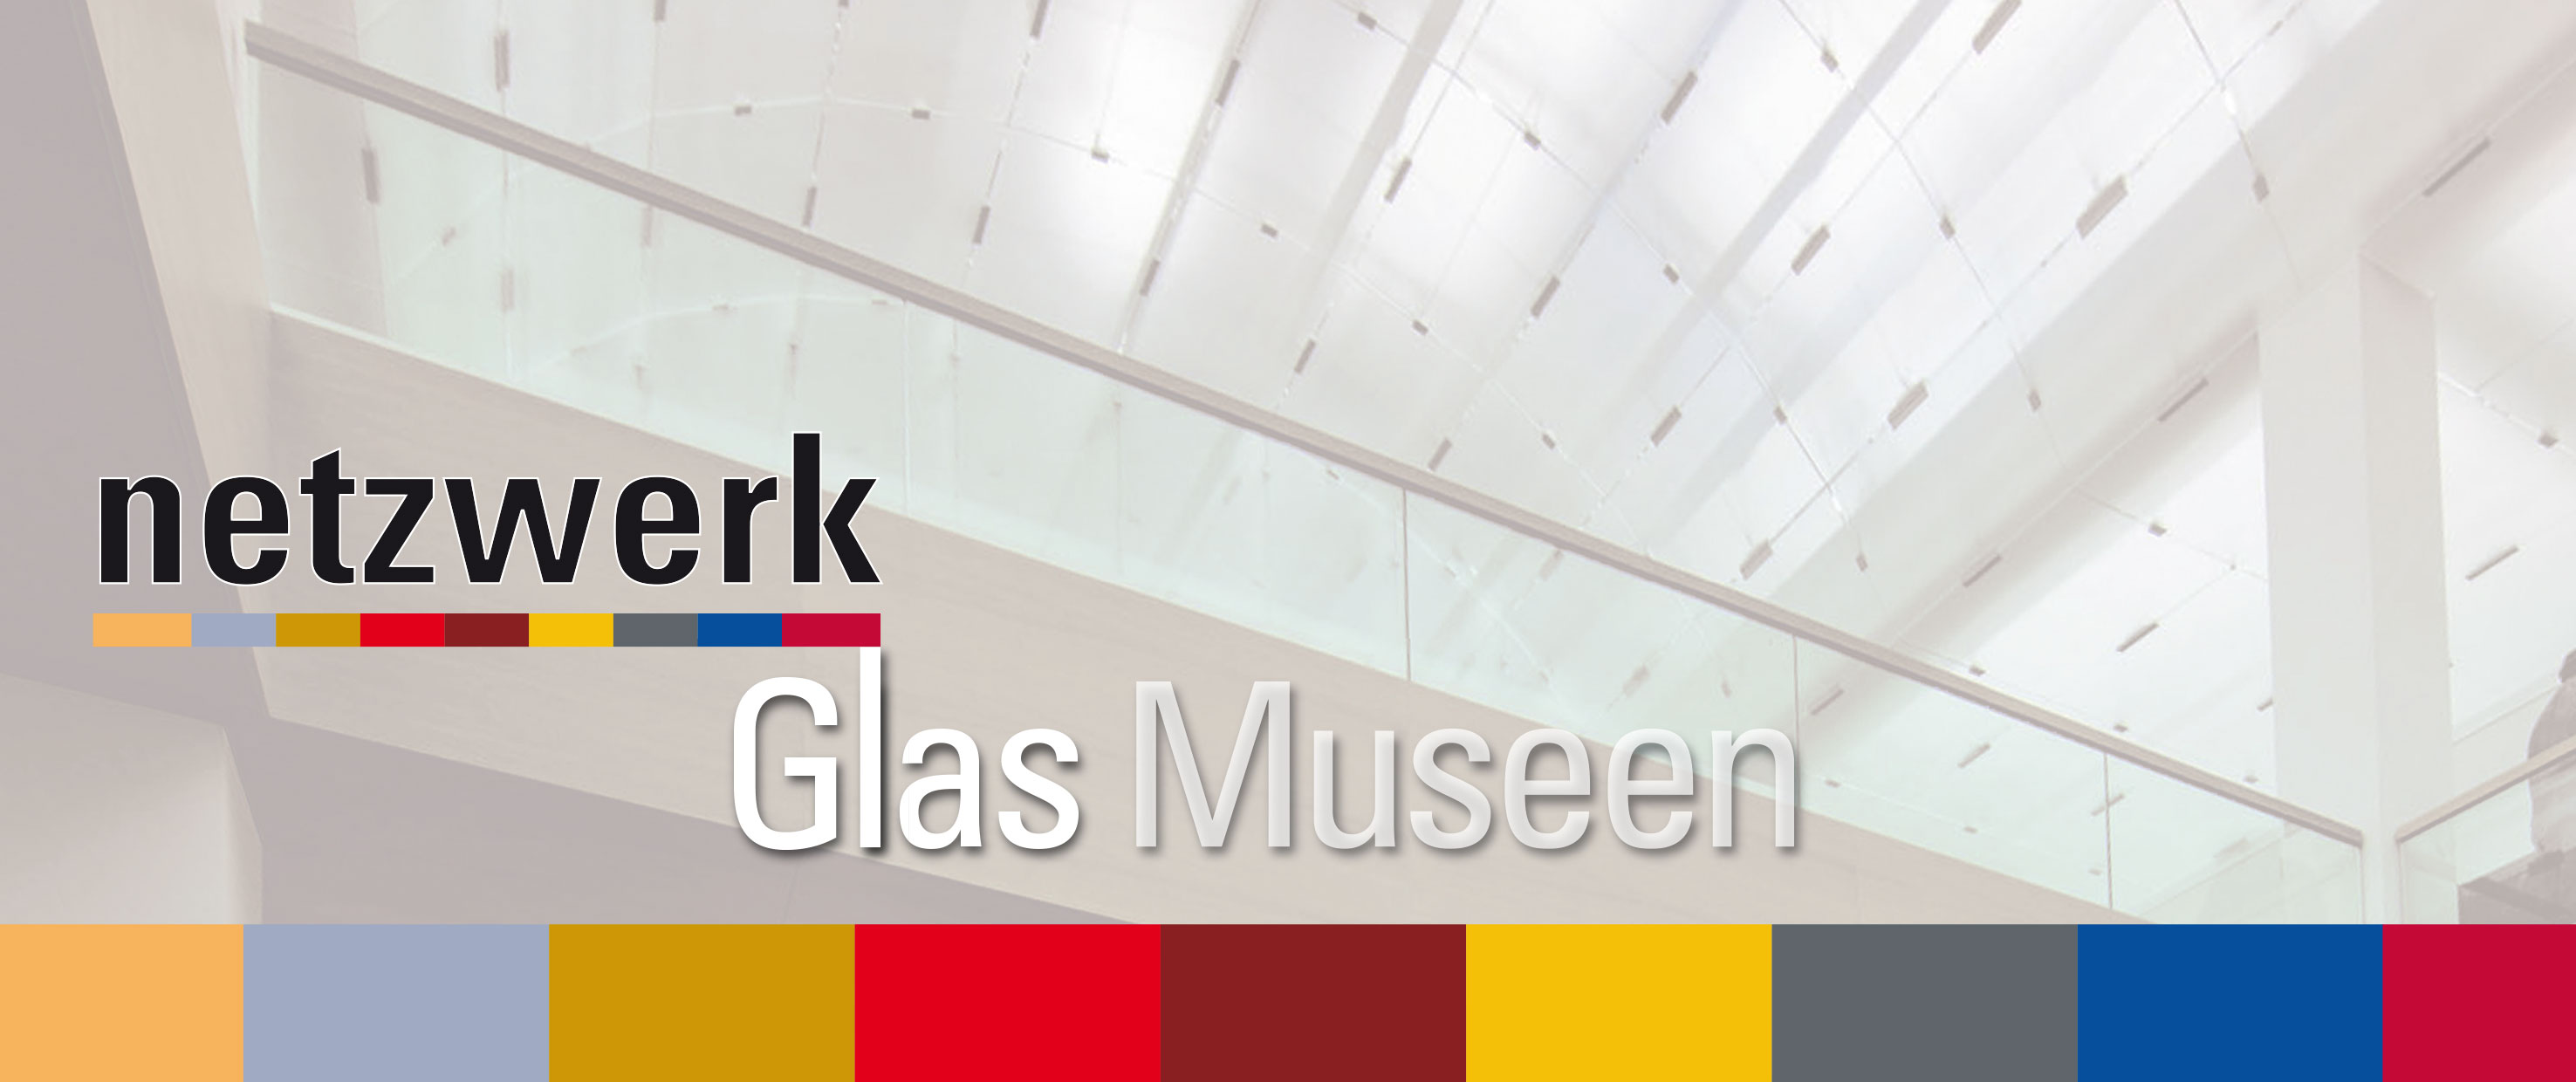 Netzwerk Glas Museen